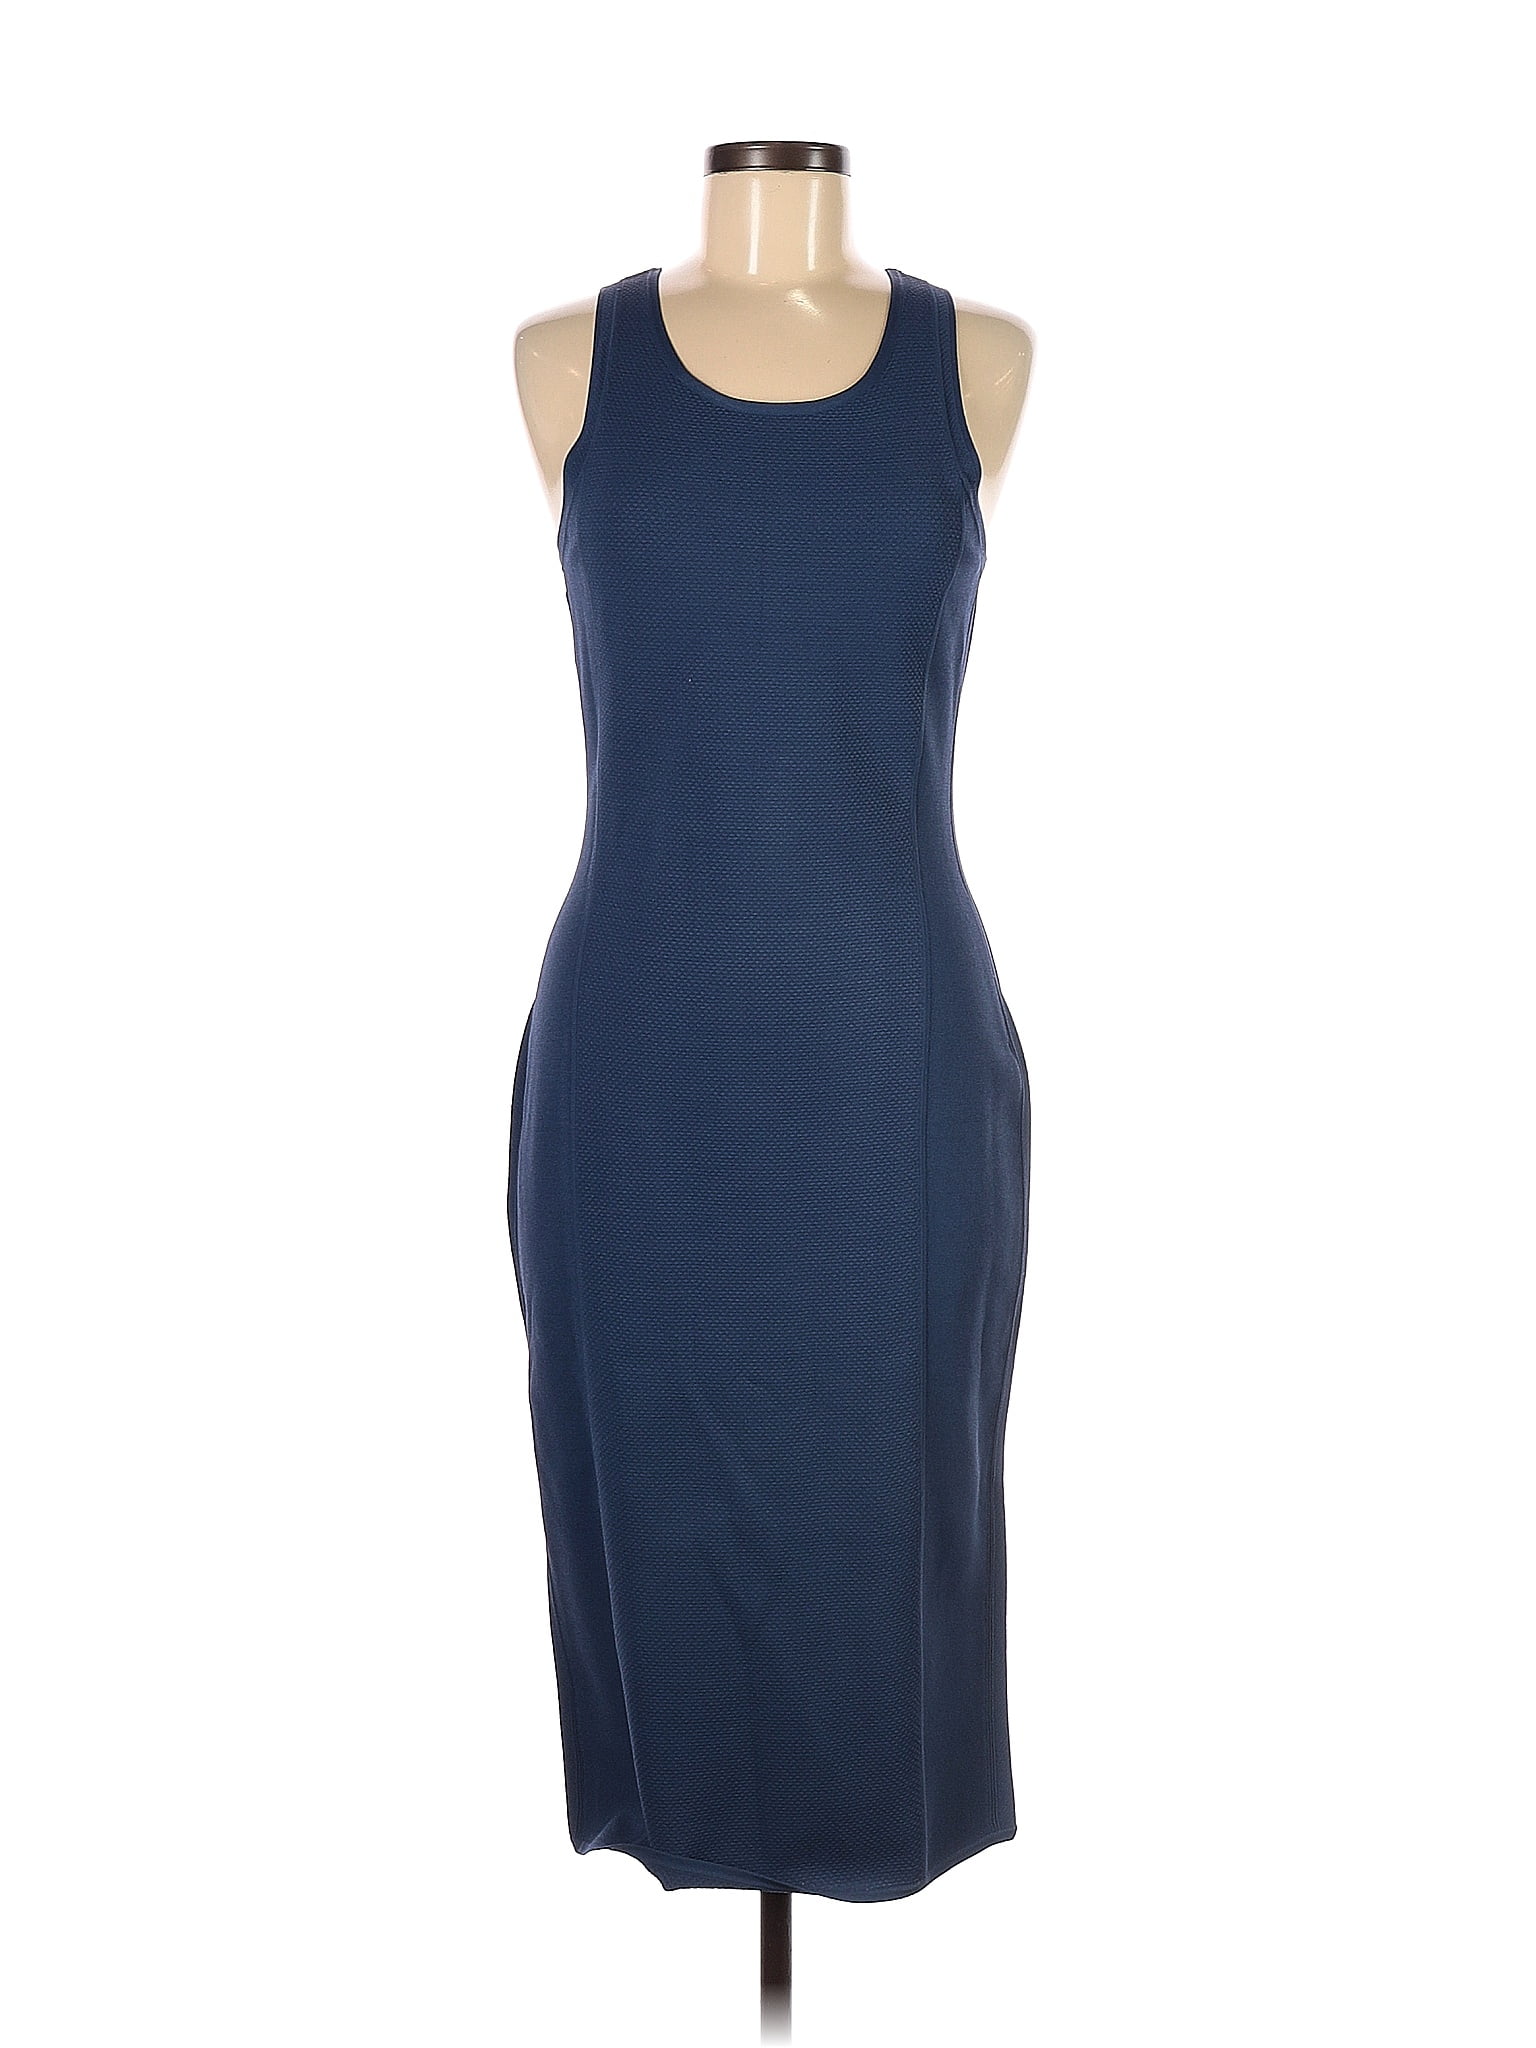 Diane von Furstenberg Blue Casual Dress Size M - 82% off | thredUP